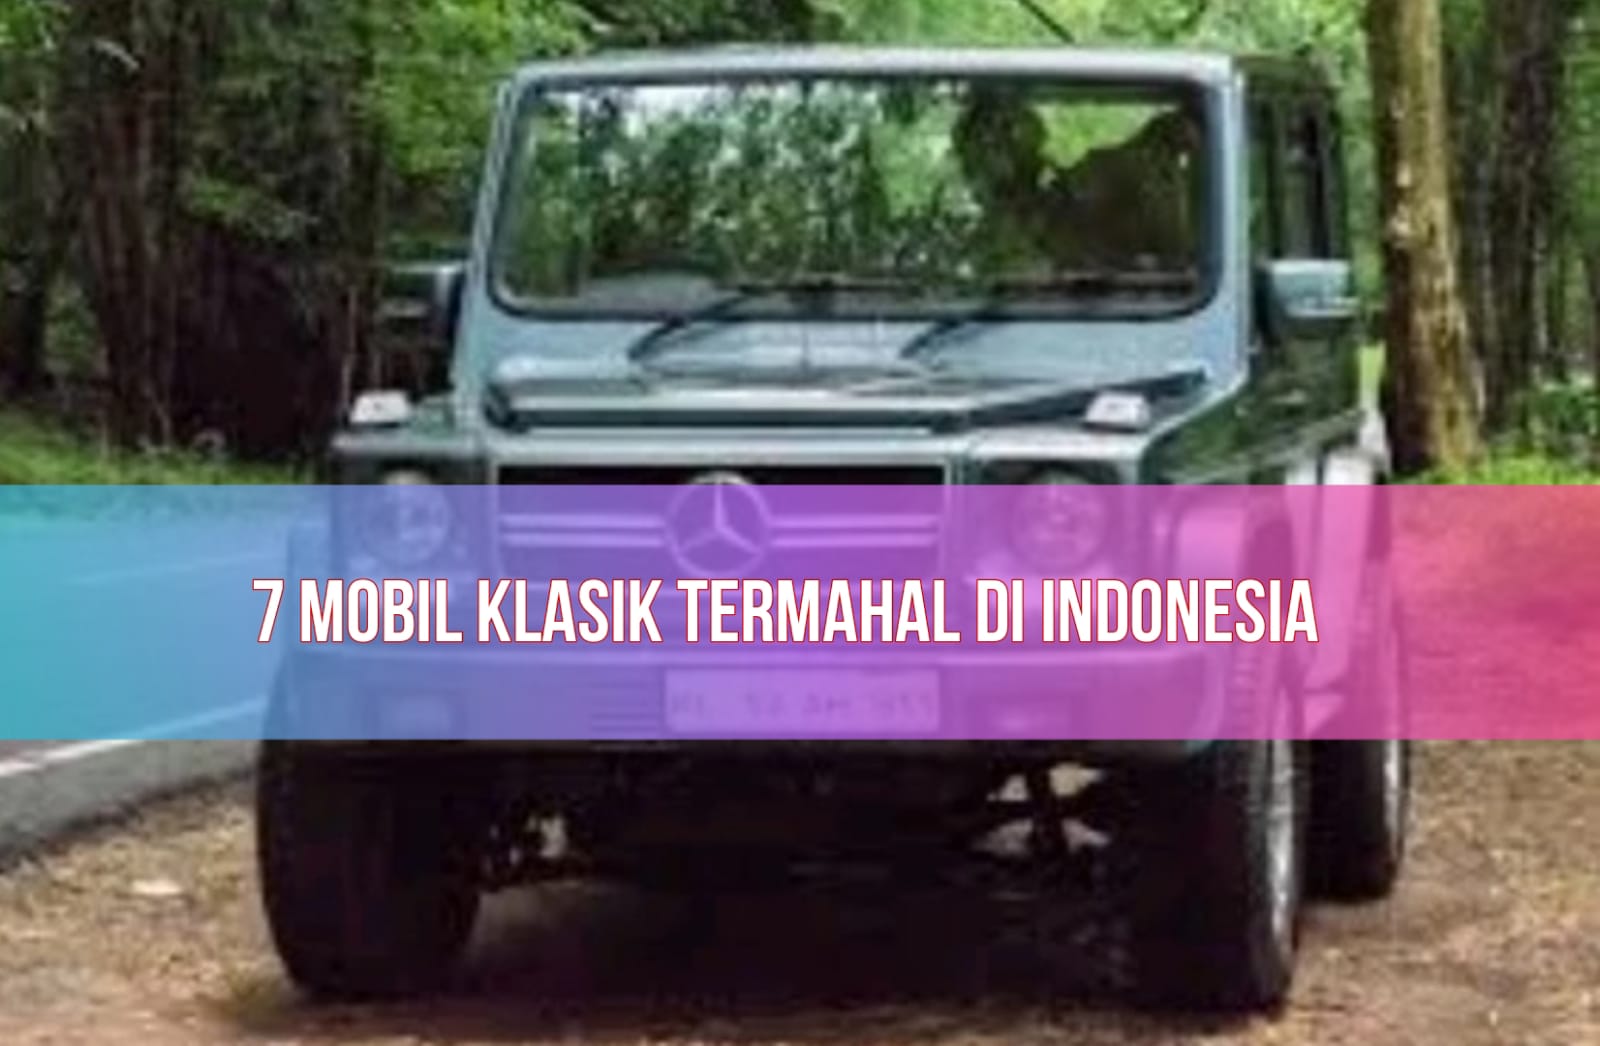 Fantastis! Inilah 7 Mobil Klasik Termahal di Indonesia, Cocok Dijadikan Investasi!